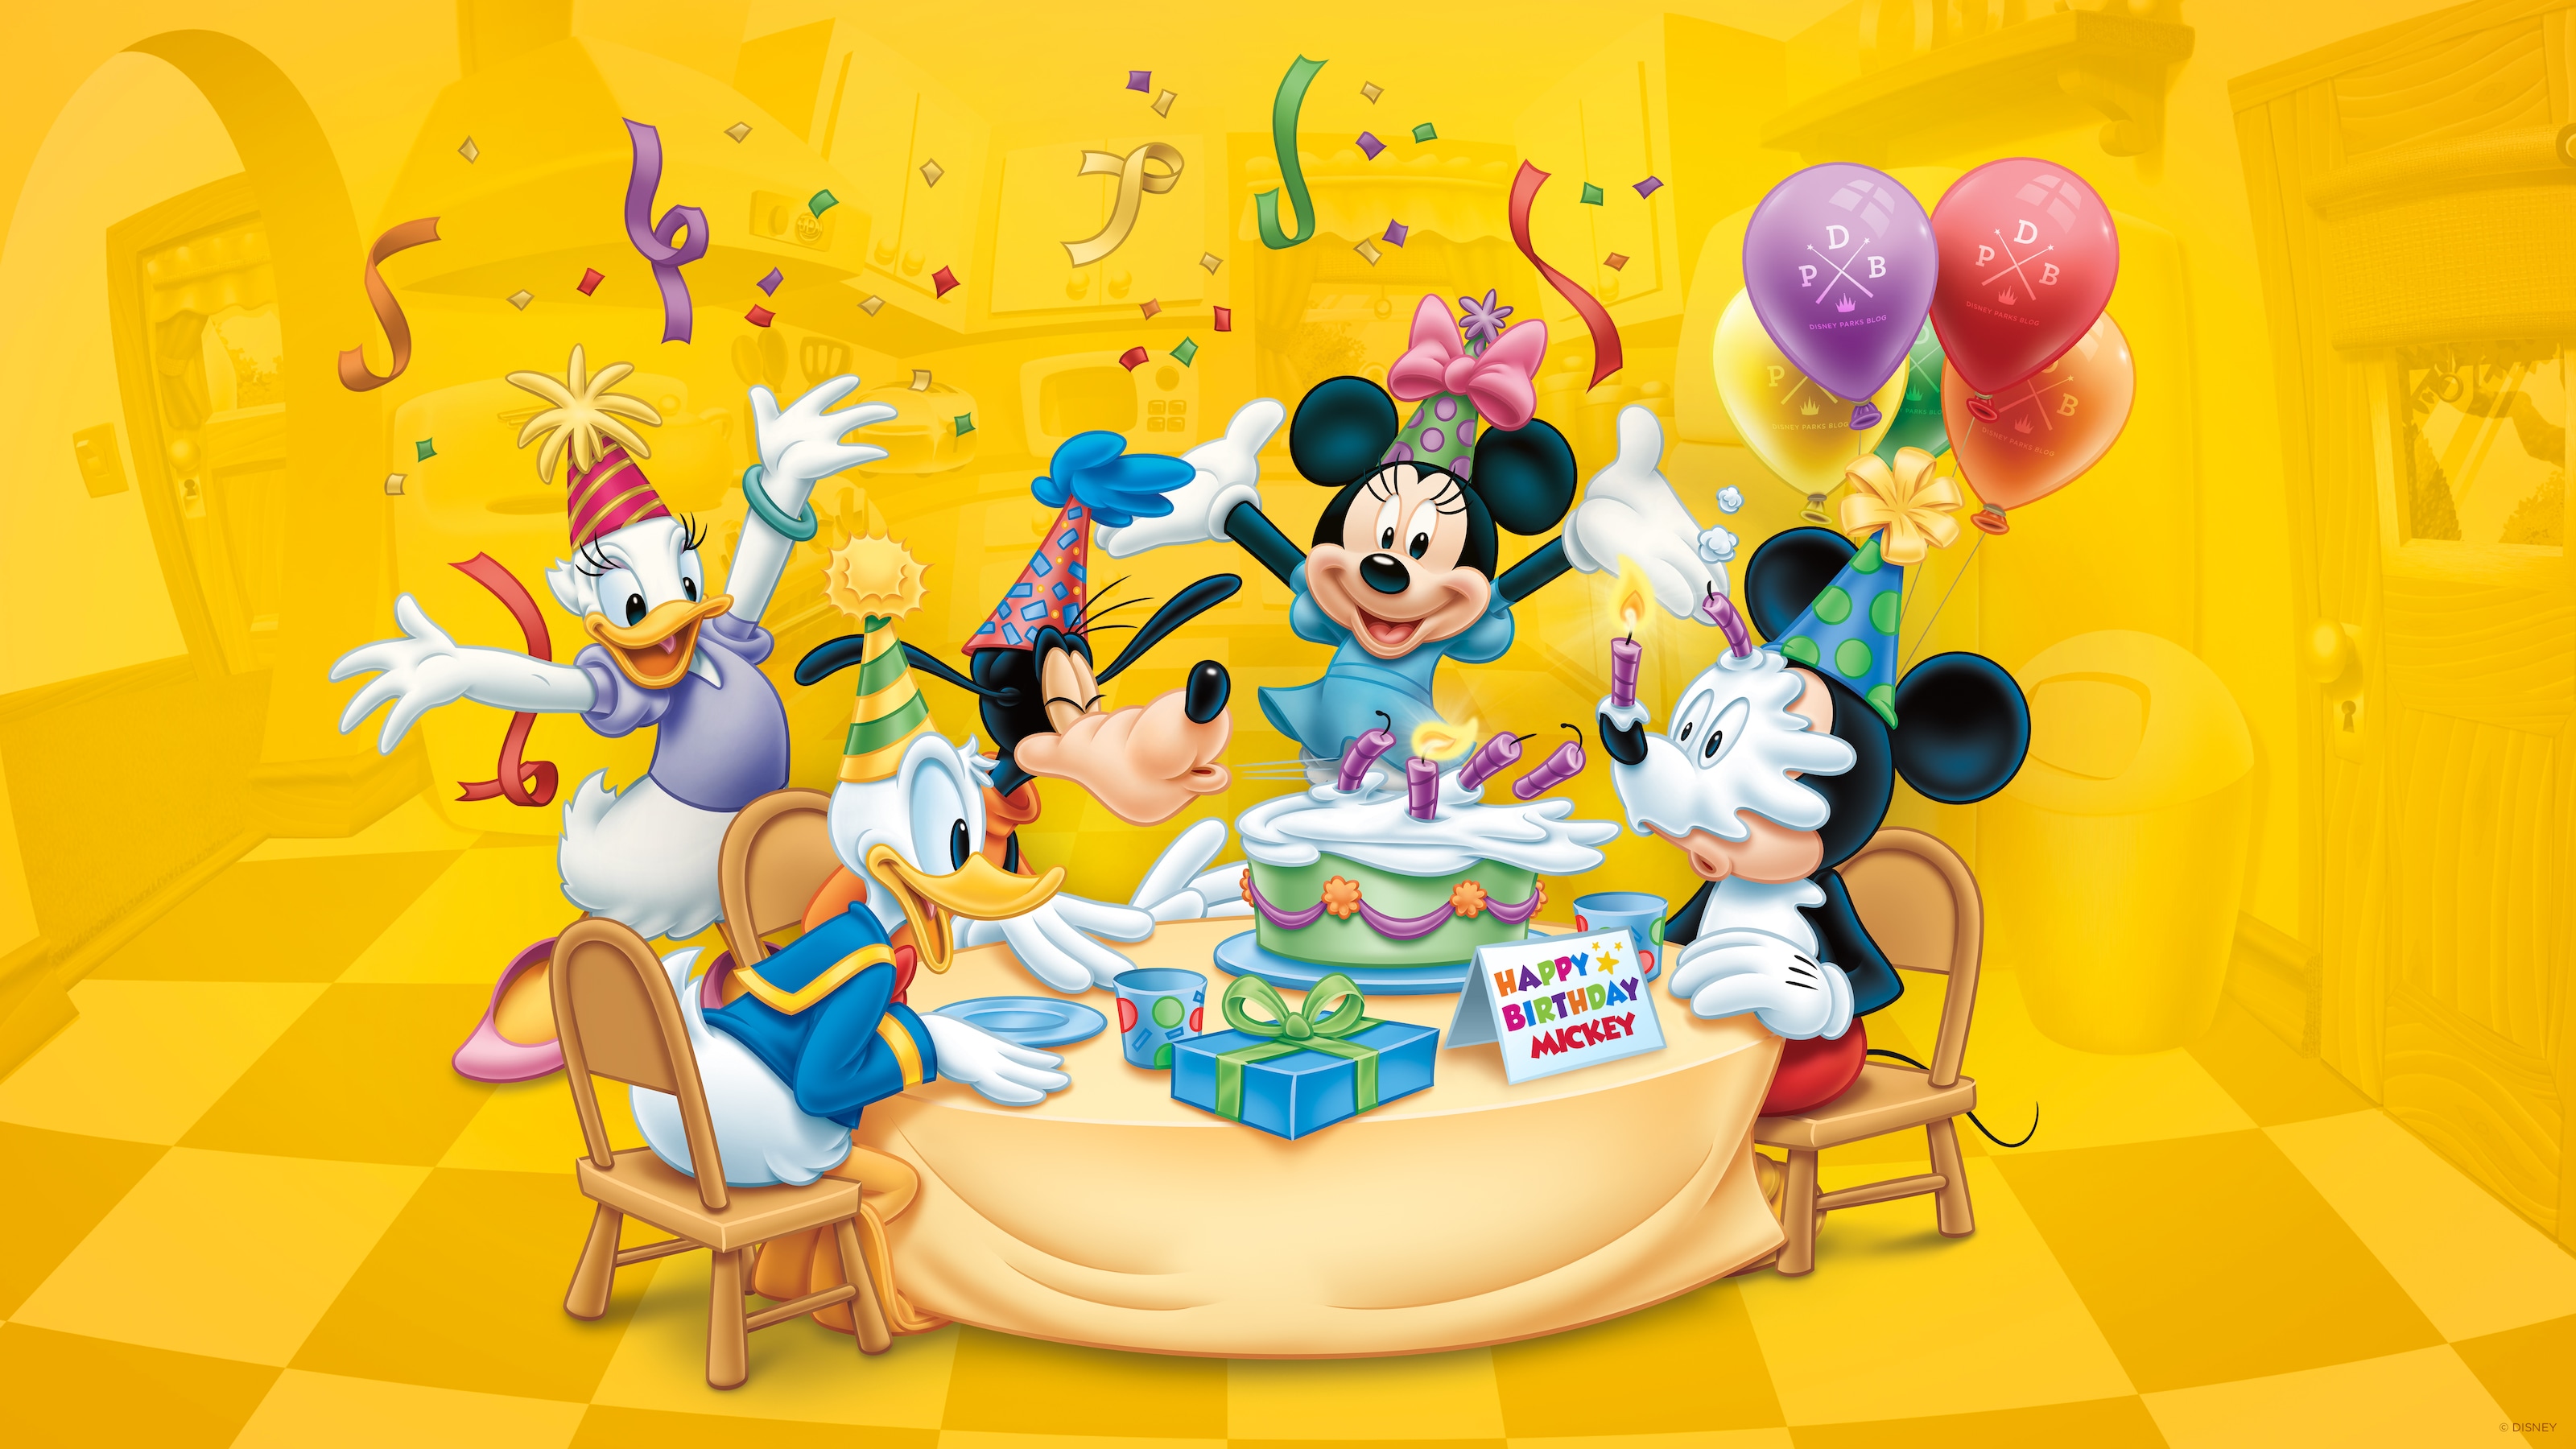 Песня из мультика с днем рождения. Микимаус день рождения Микки. Дисней микимаус день рождения. С днем рождения Микки Маус. День рождения Микки Мауса (Mickey Mouse Birthday).